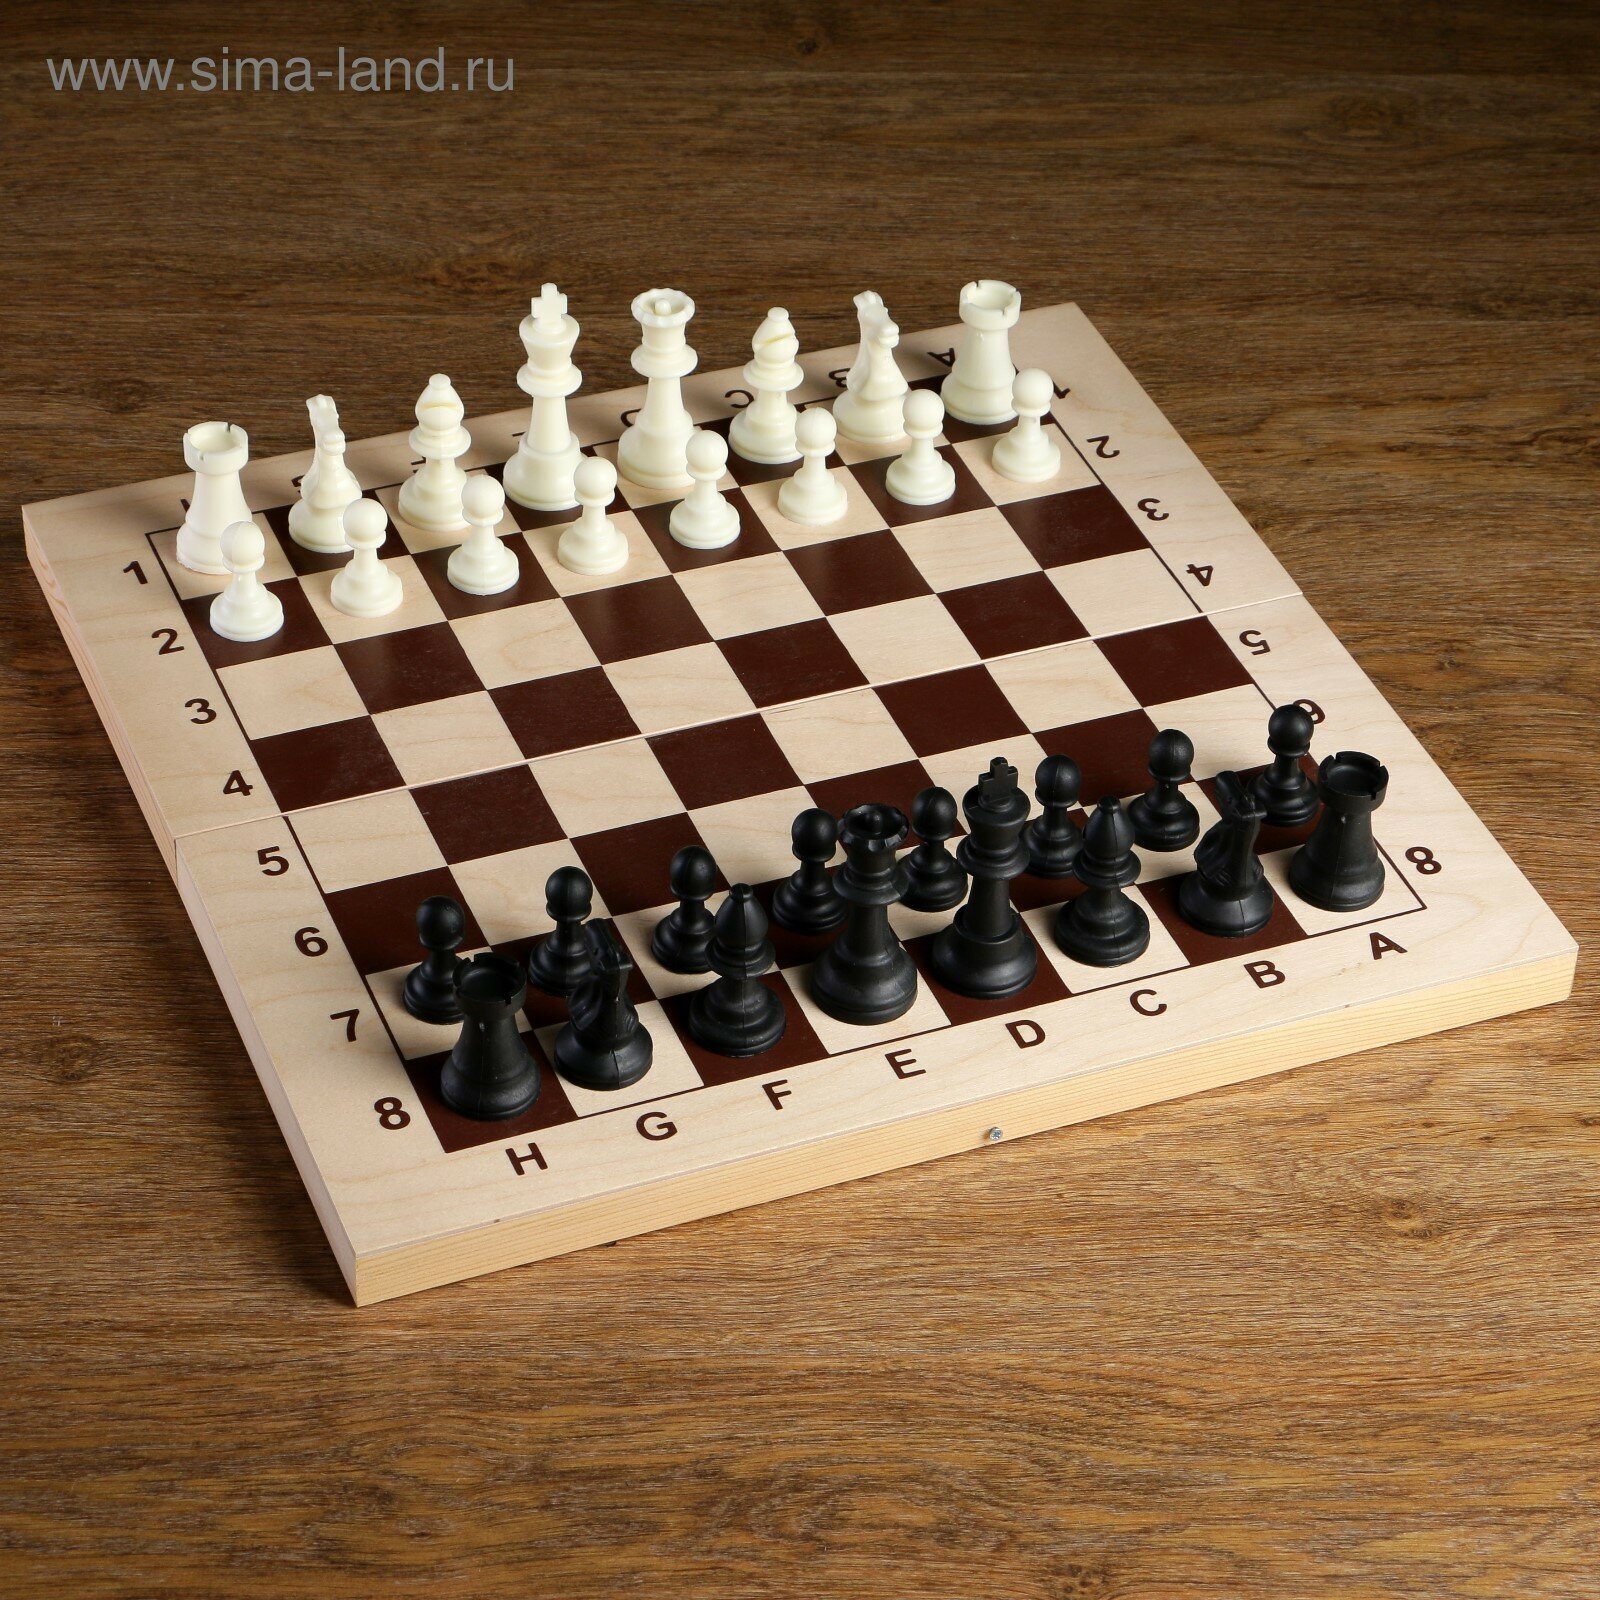 Шахматные фигуры, пластик, король h-9 см, пешка h-4.1 см (1шт.)